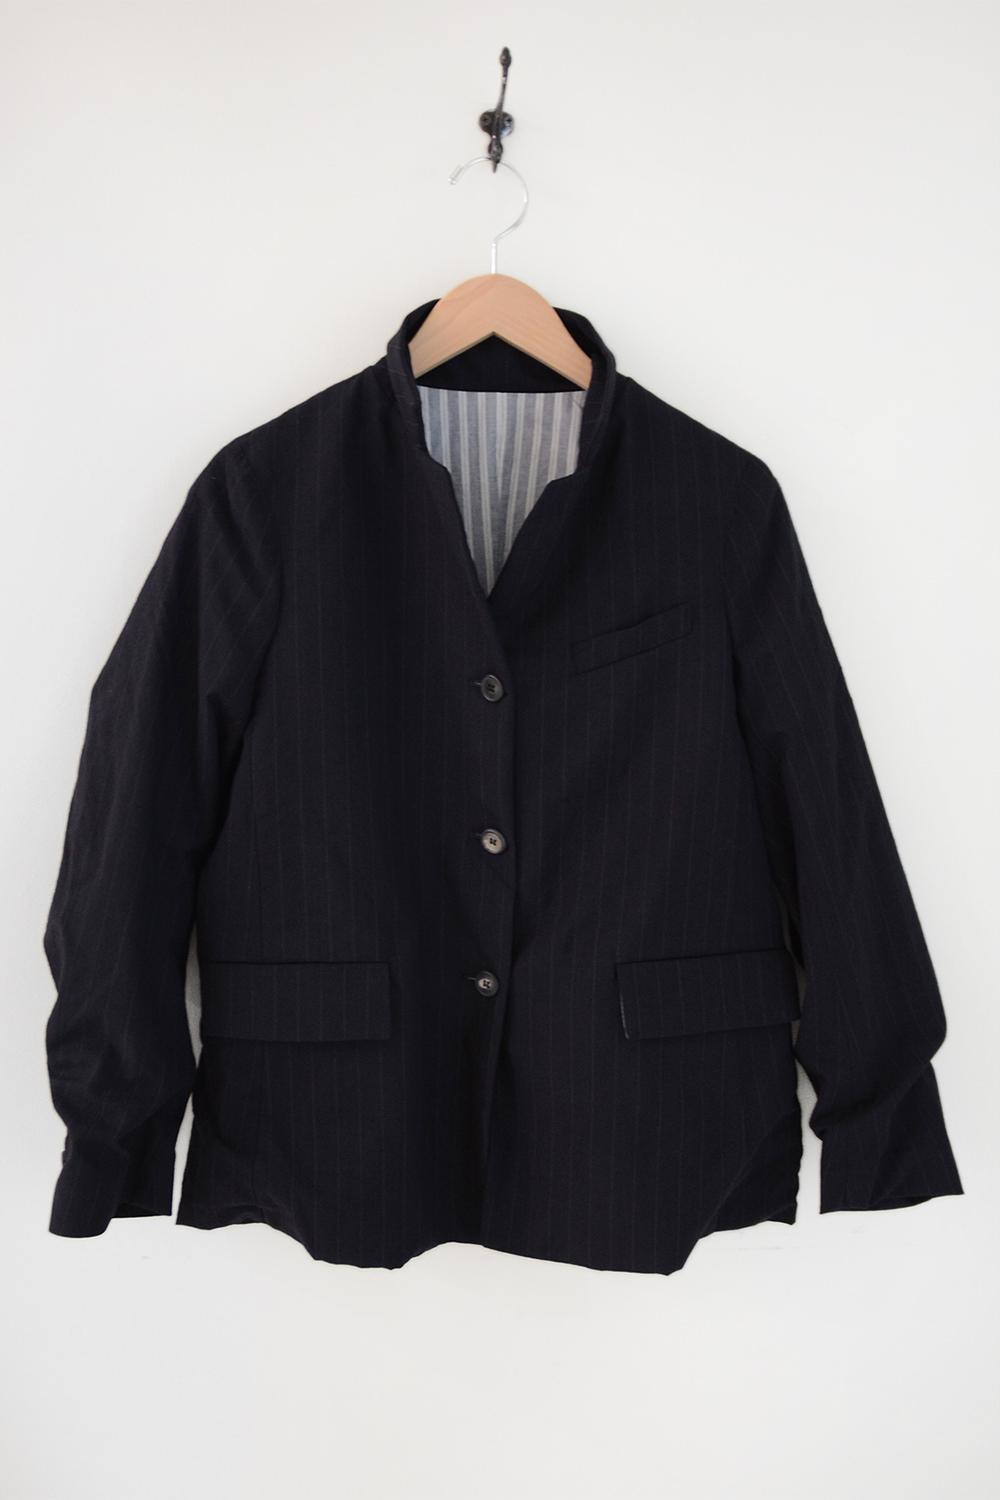 bergfabel virgin wool giulia jacket navy stripe top picture